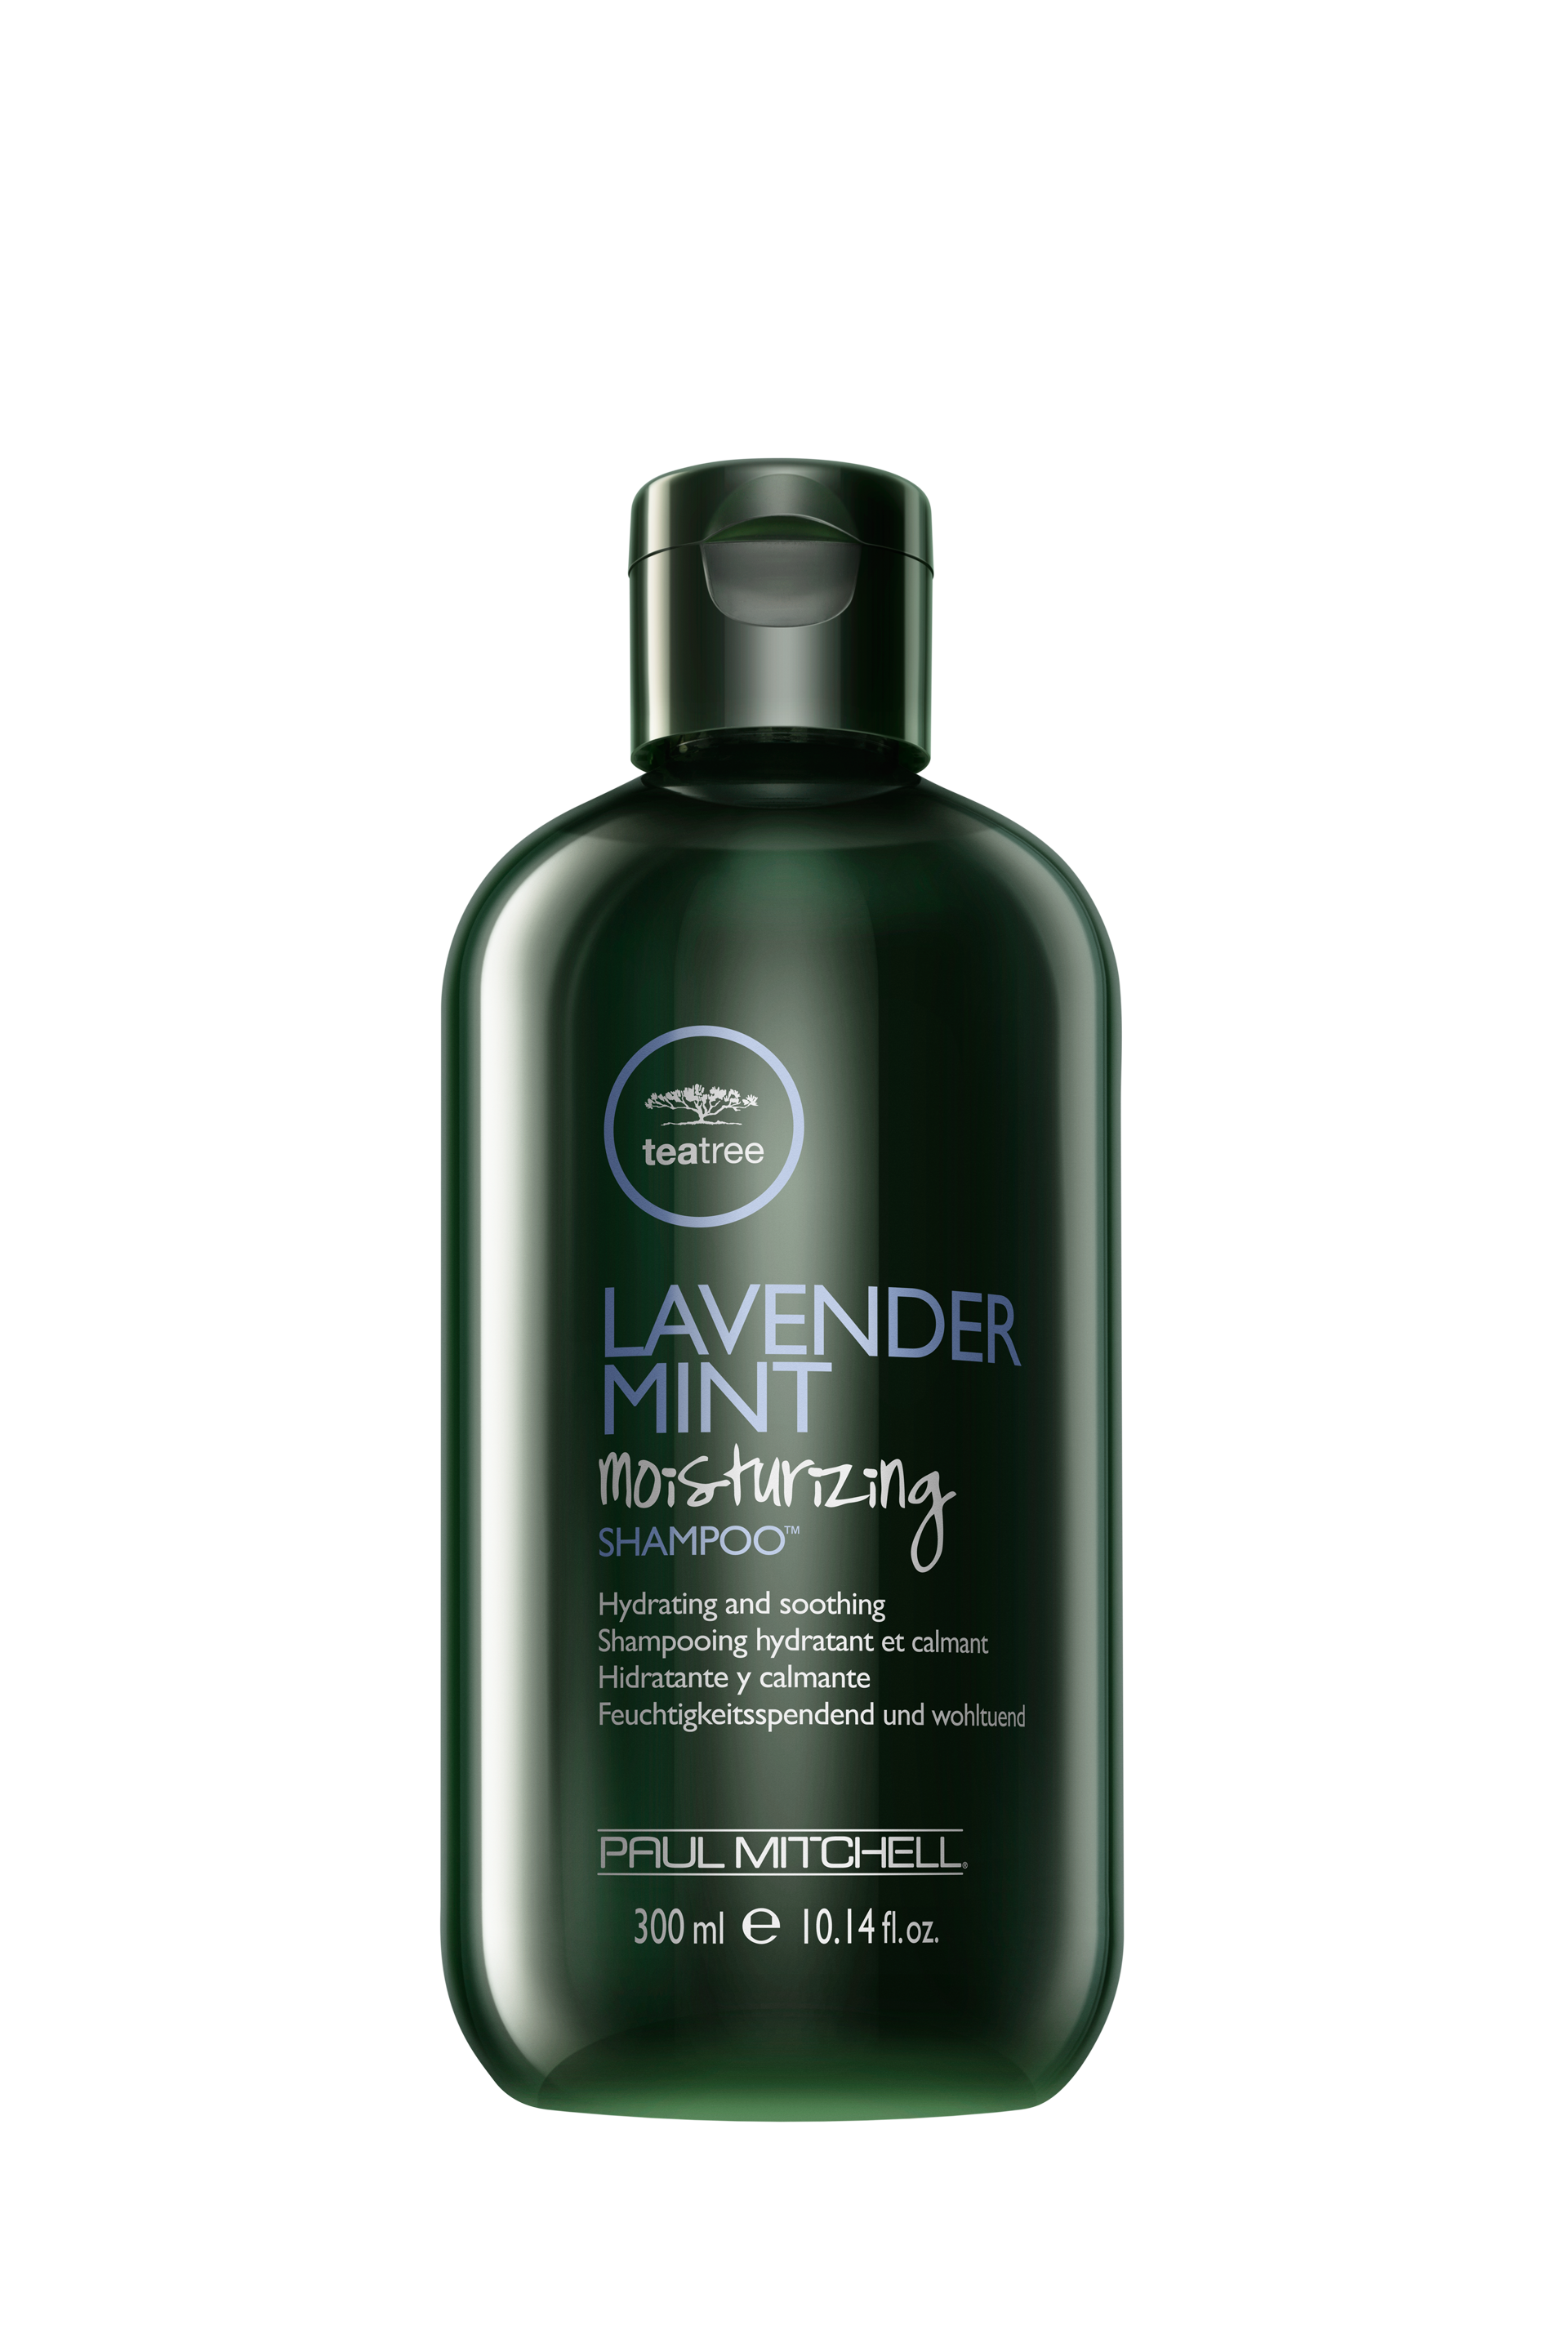 Tea Tree Lavender Mint Paul Mitchell Hair Shampoo - 300ml |  New Old Man